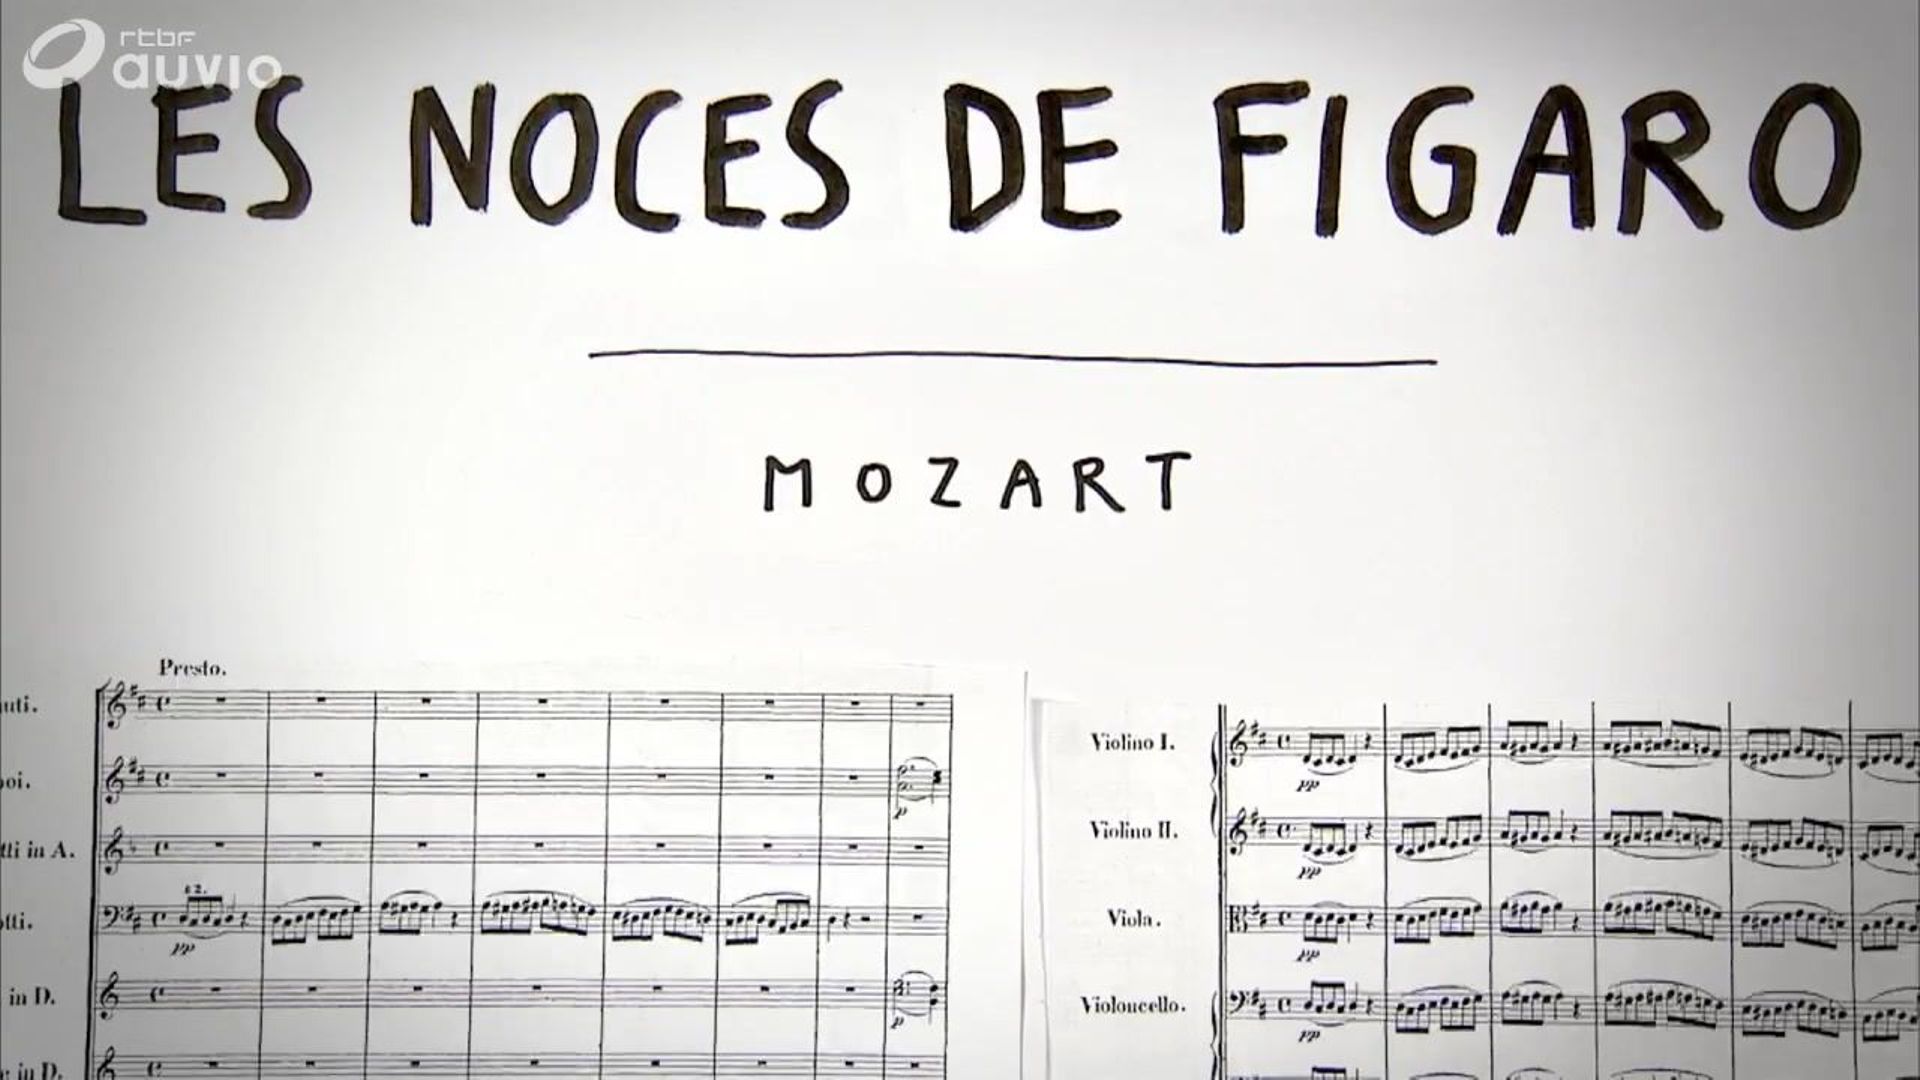 Je Sais Pas Vous : Les Noces de Figaro, de Mozart